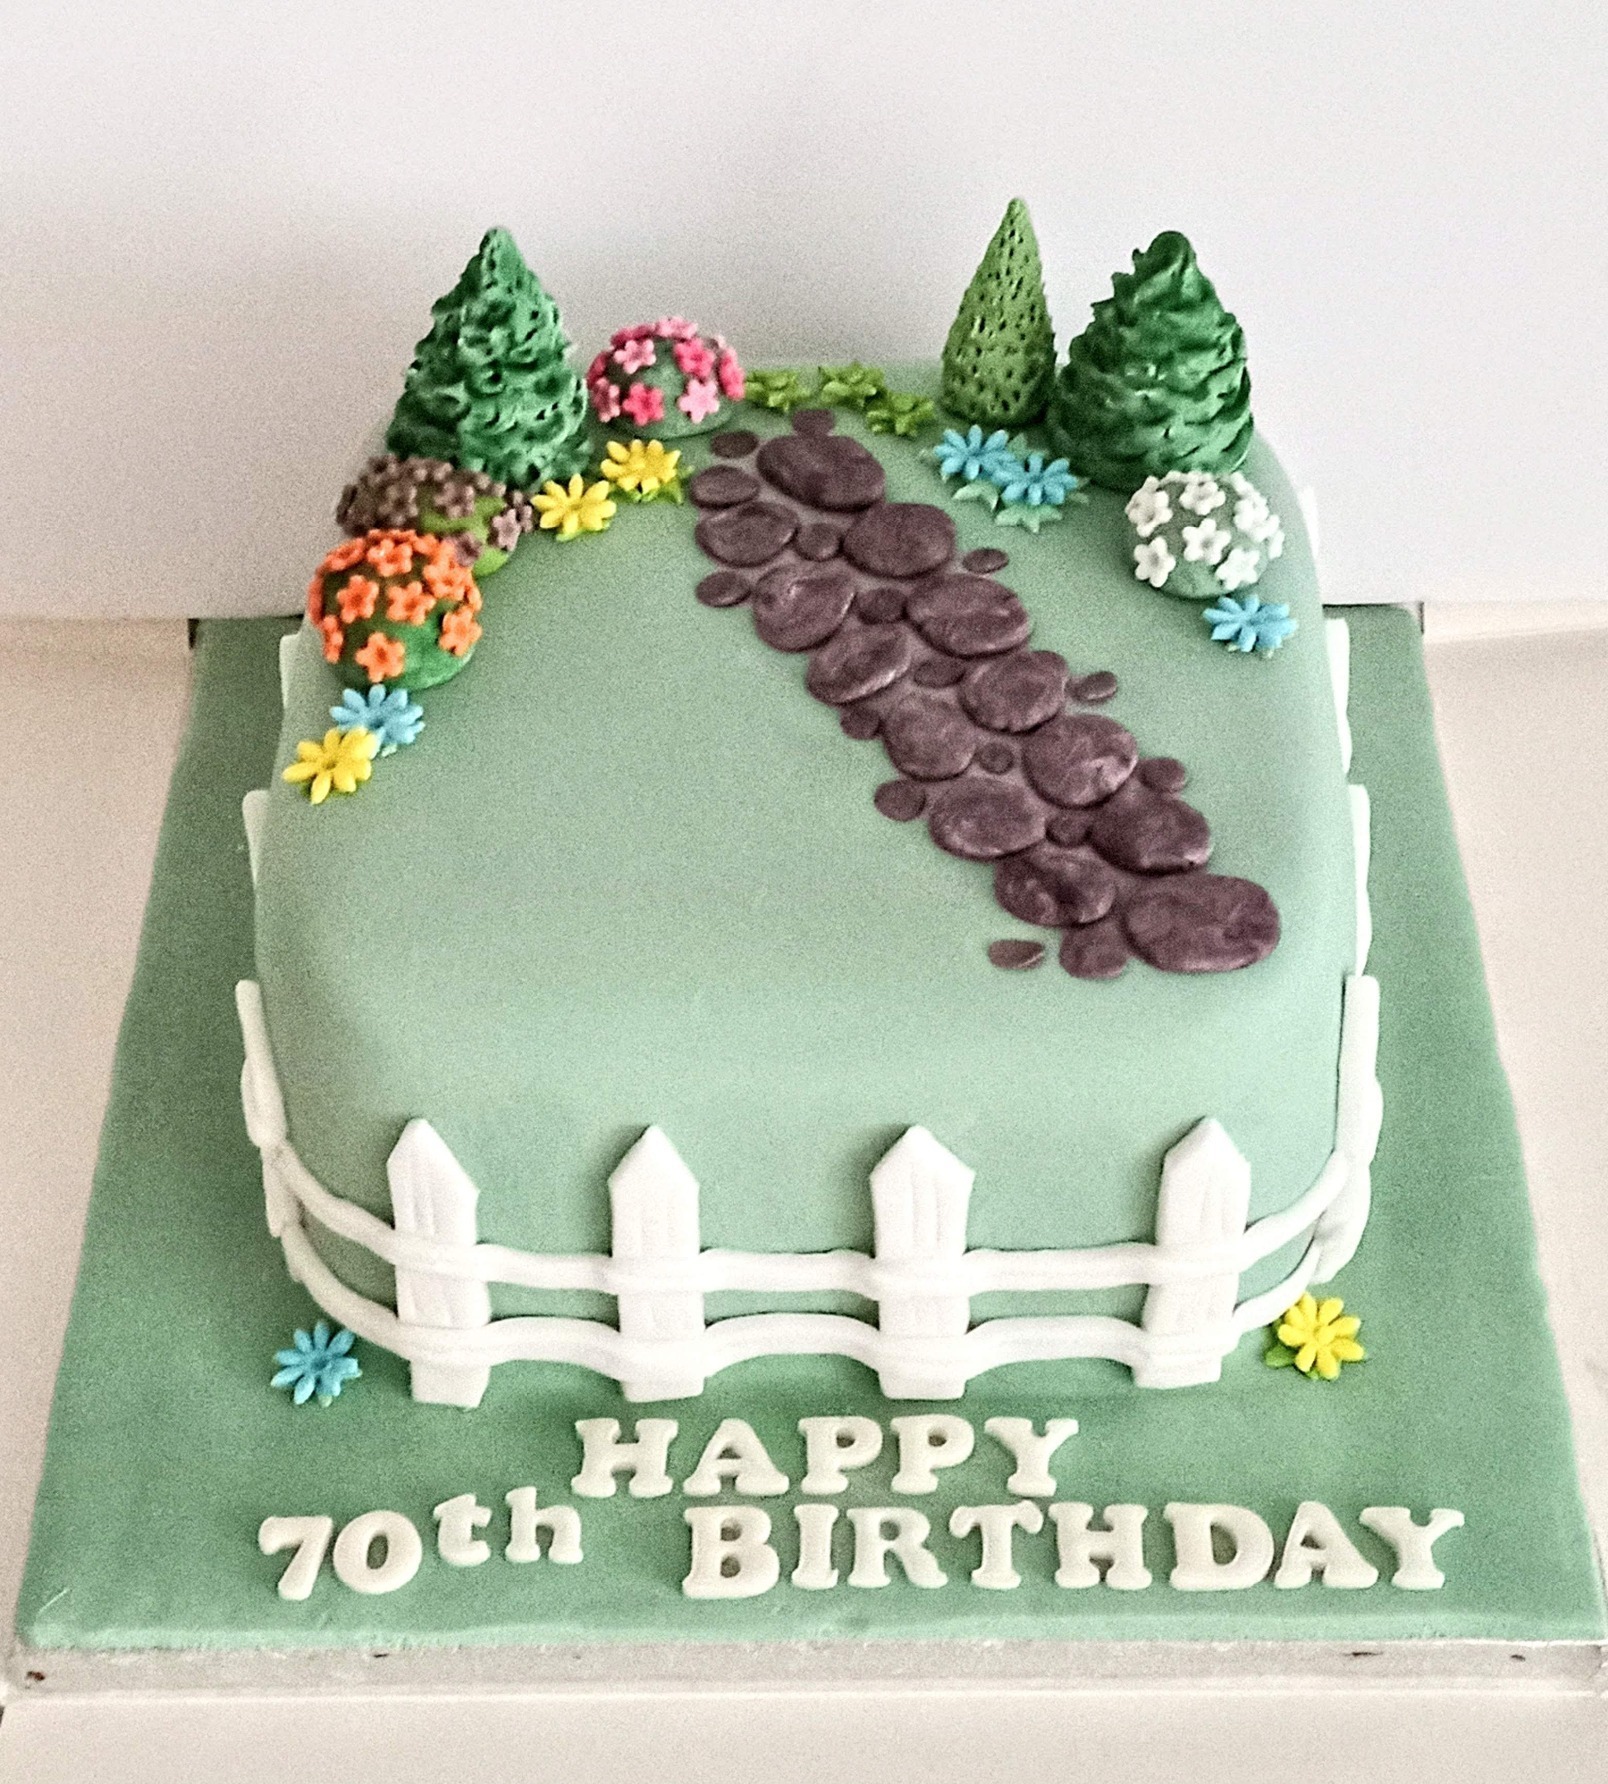 A lovely garden inspired birthday cake